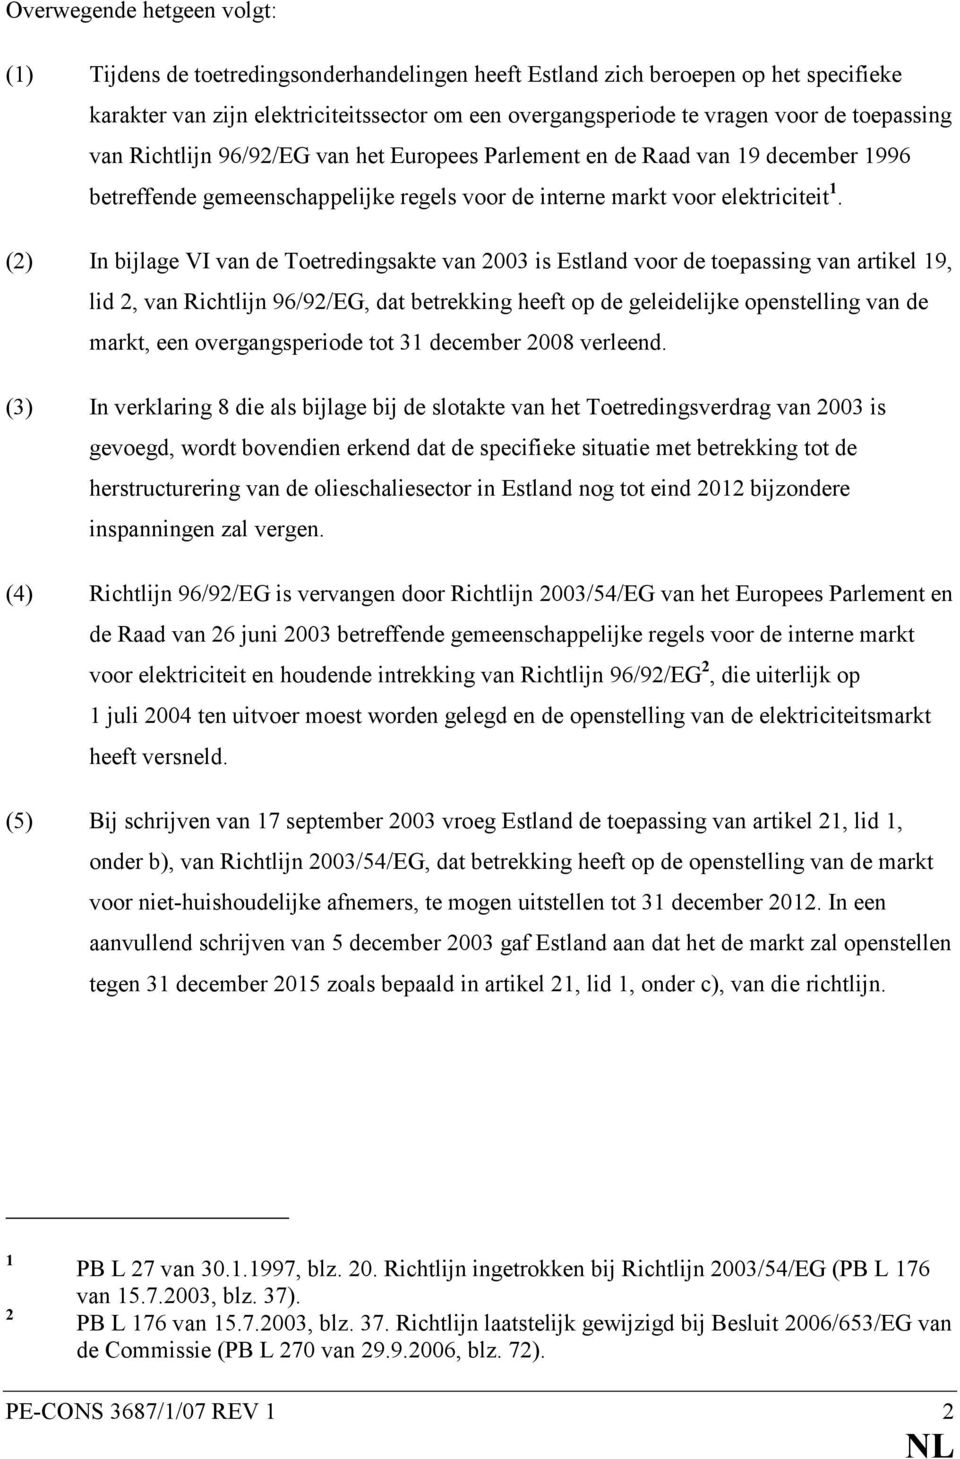 (2) In bijlage VI van de Toetredingsakte van 2003 is Estland voor de toepassing van artikel 19, lid 2, van Richtlijn 96/92/EG, dat betrekking heeft op de geleidelijke openstelling van de markt, een